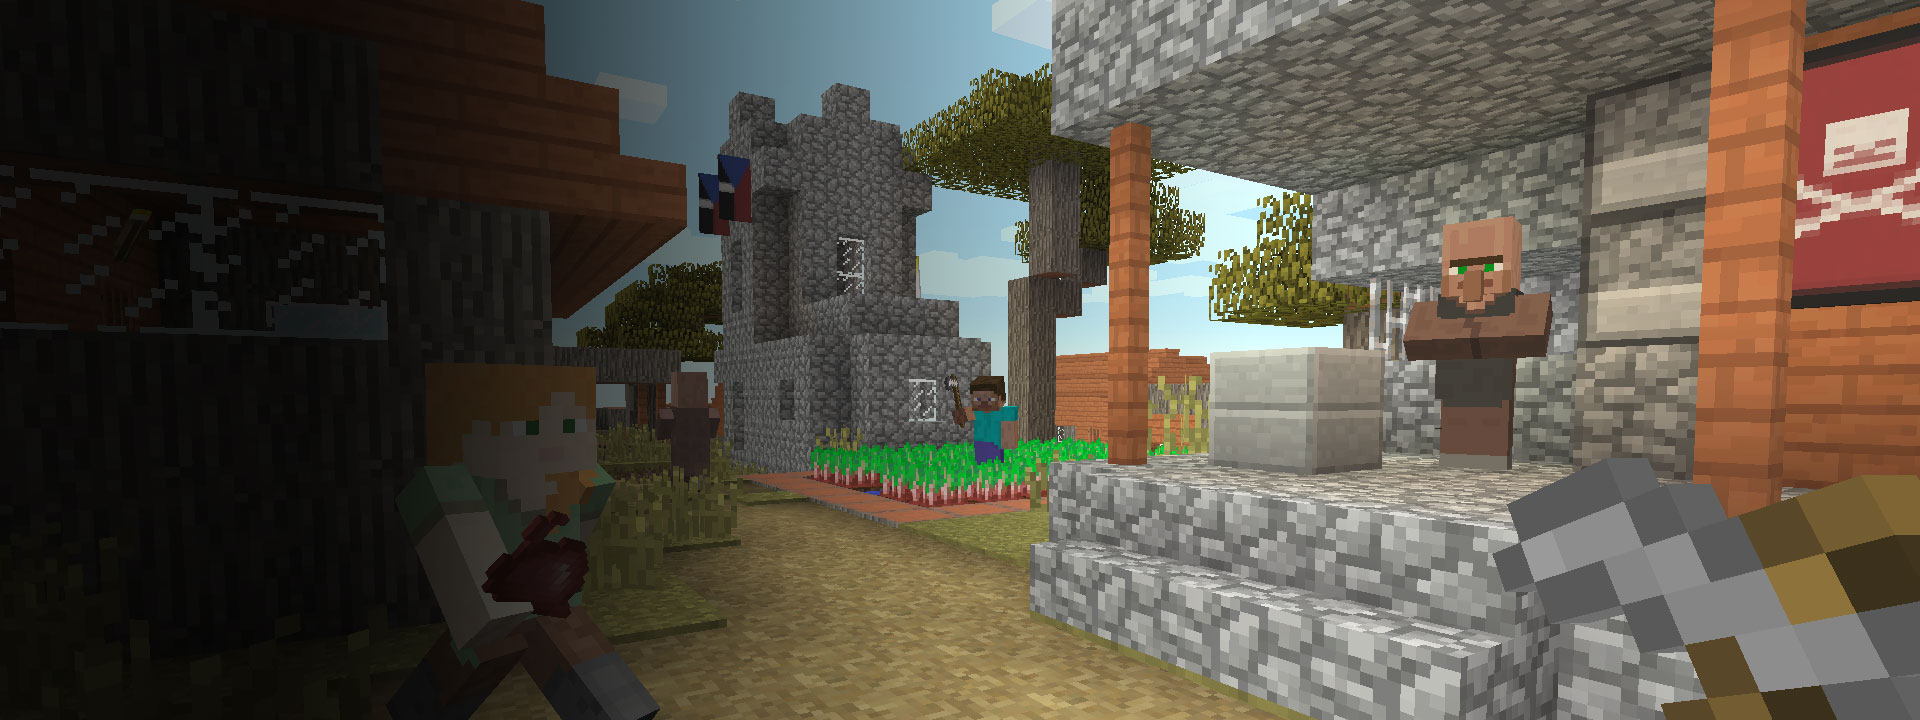 Viaceré domy a postavy z hry Minecraft kráčajúceho v popredí.